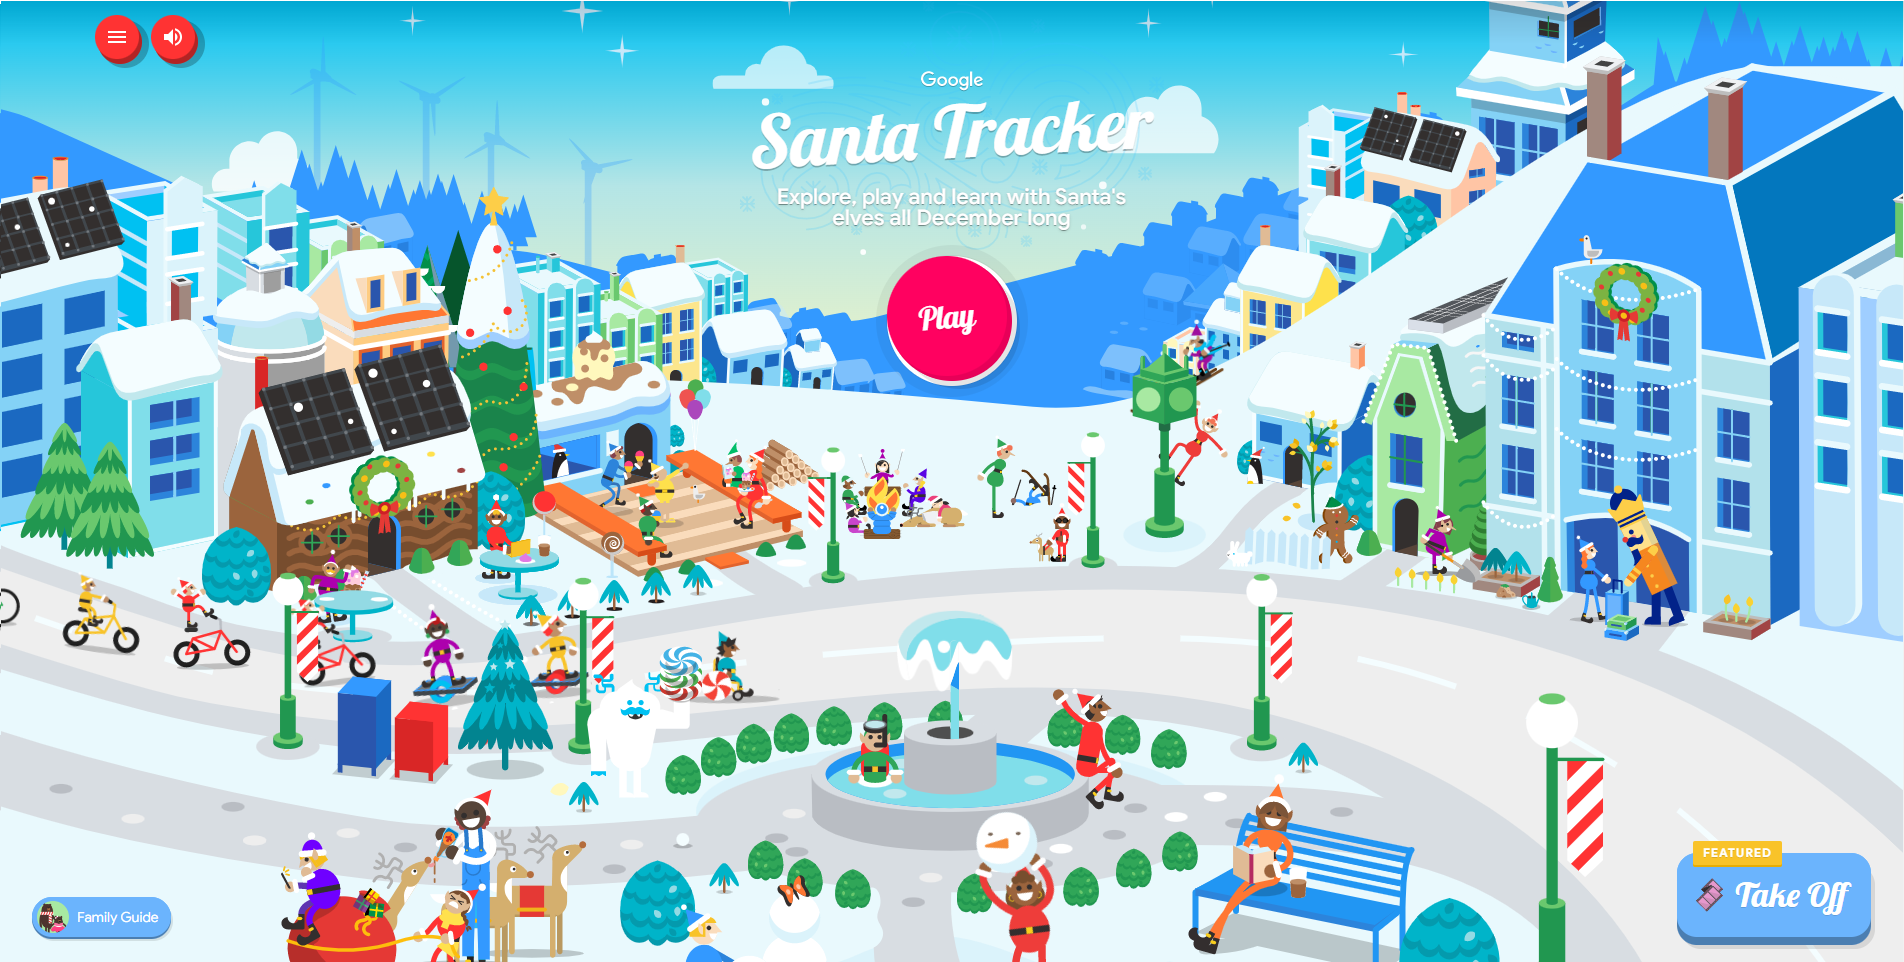 Де зараз Санта? Google запустив сервіс відстеження Санта-Клауса в реальному часі